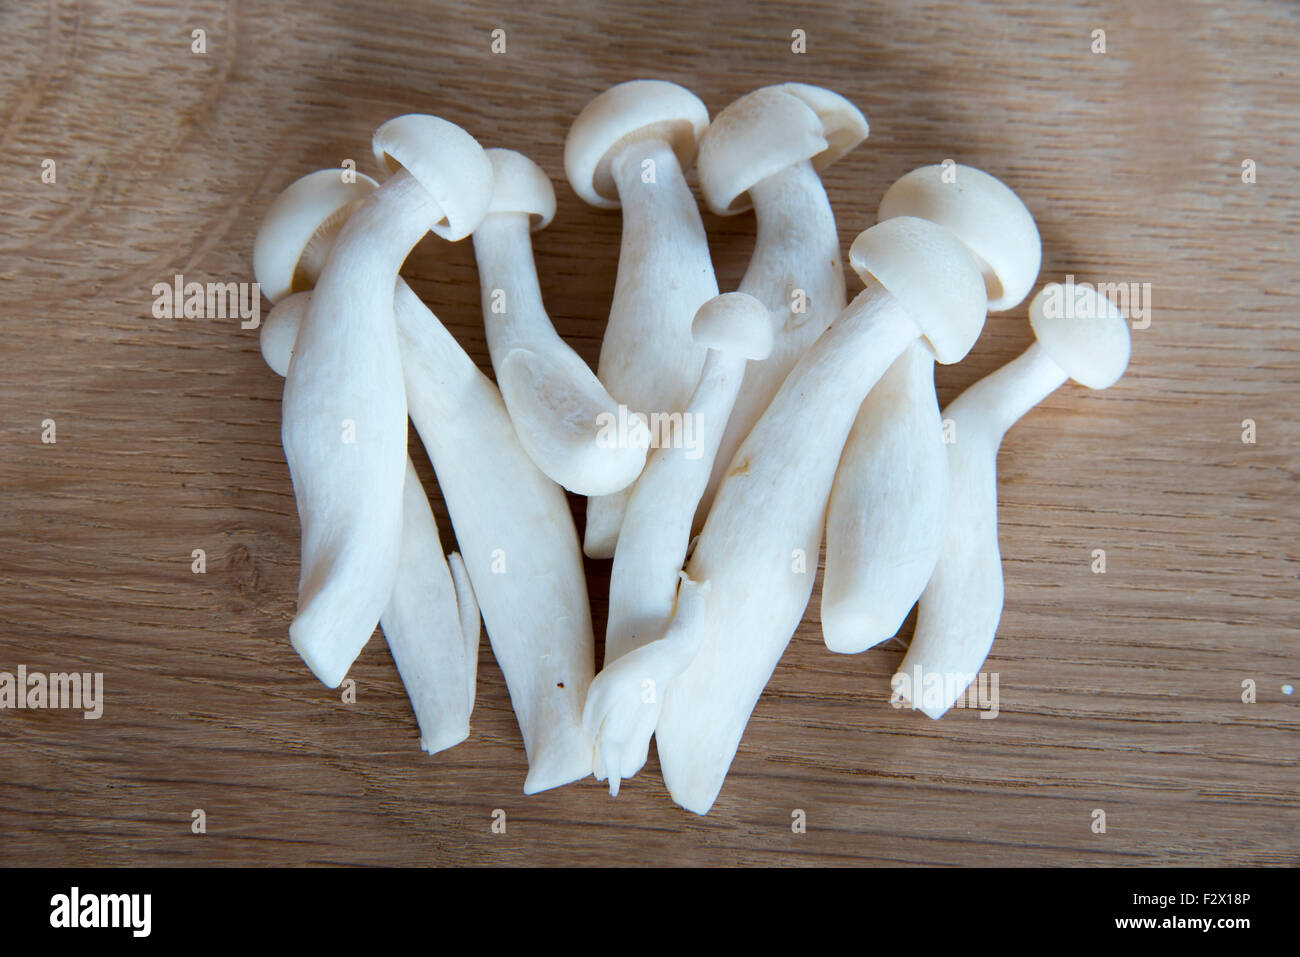 Hêtre Blanc champignons asiatiques Banque D'Images